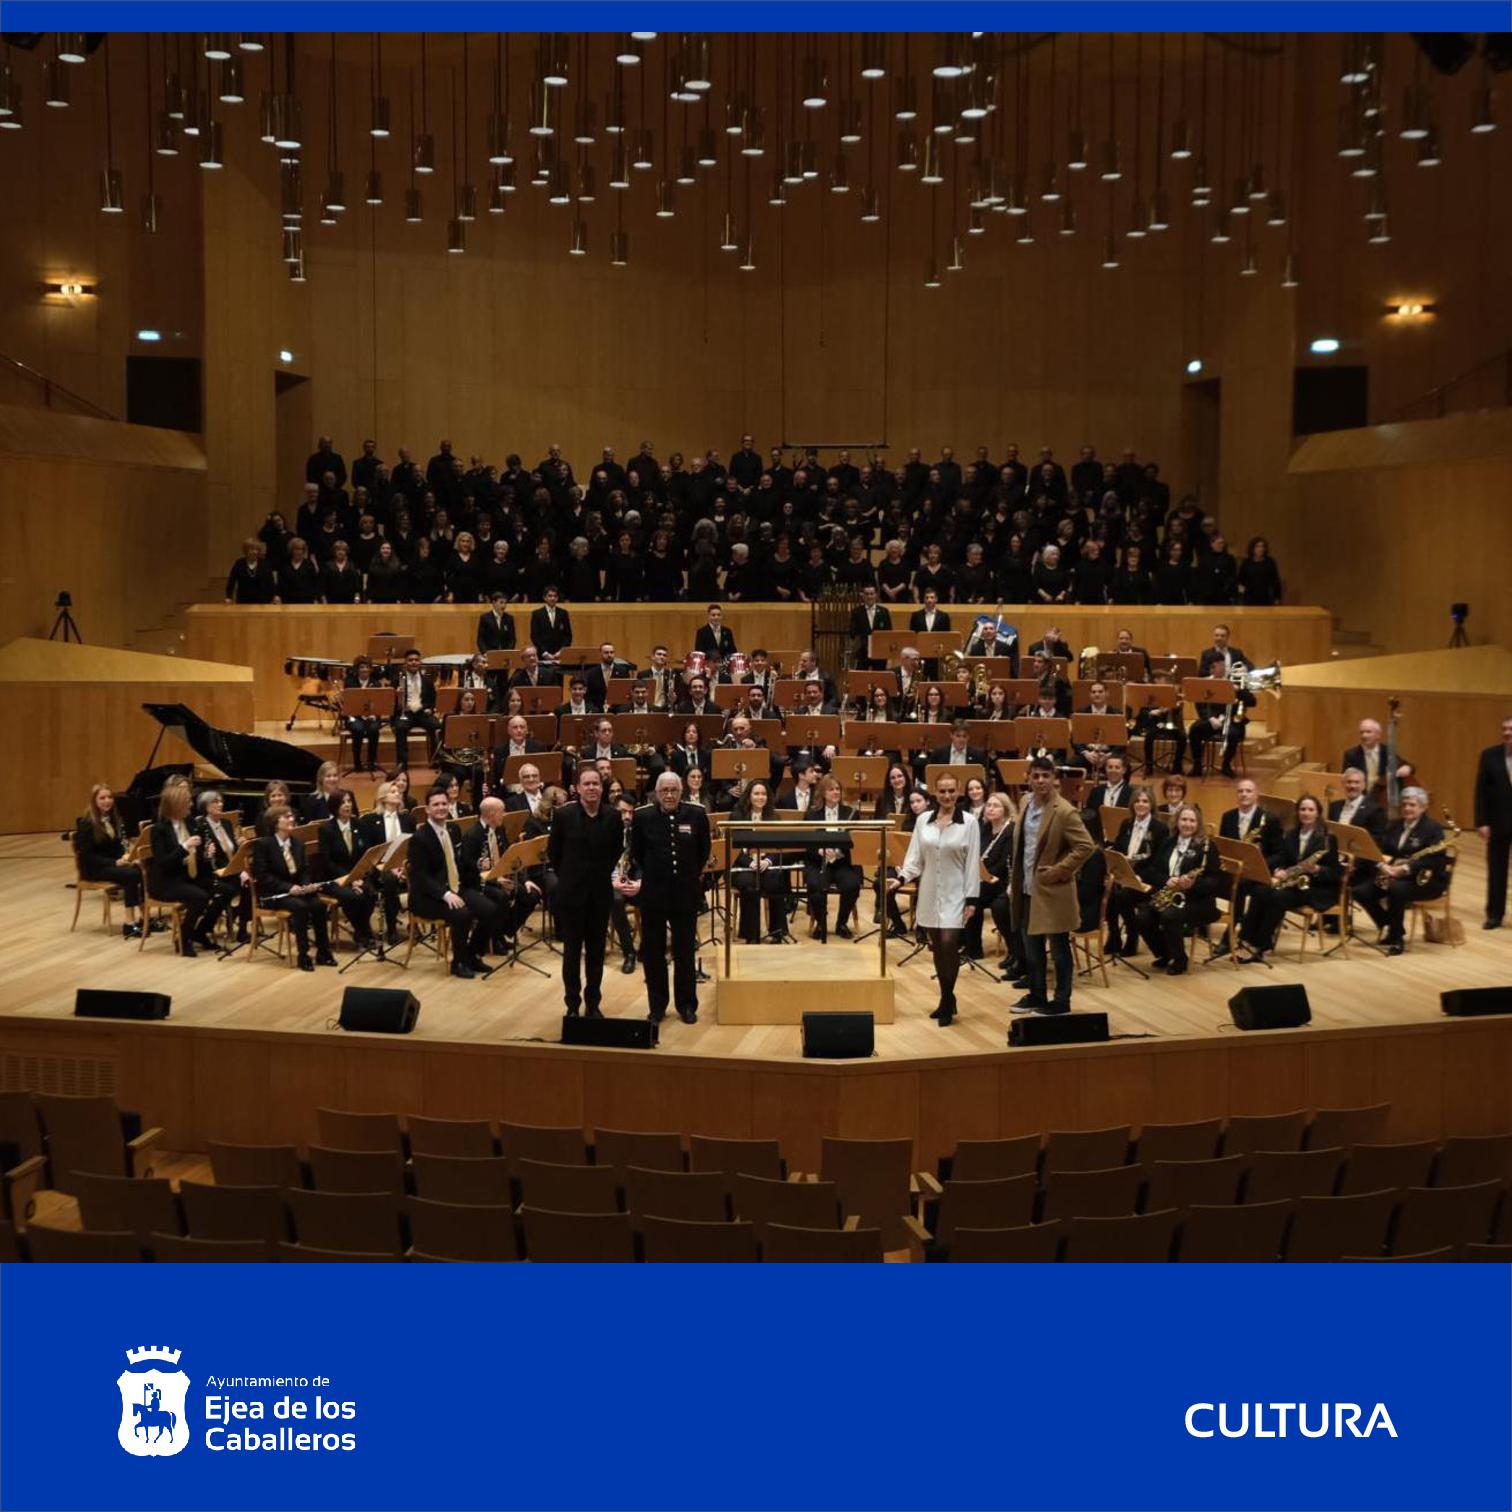 En este momento estás viendo La Banda Municipal de Ejea cosecha grandes éxitos en los conciertos ofrecidos en Ejea y Zaragoza